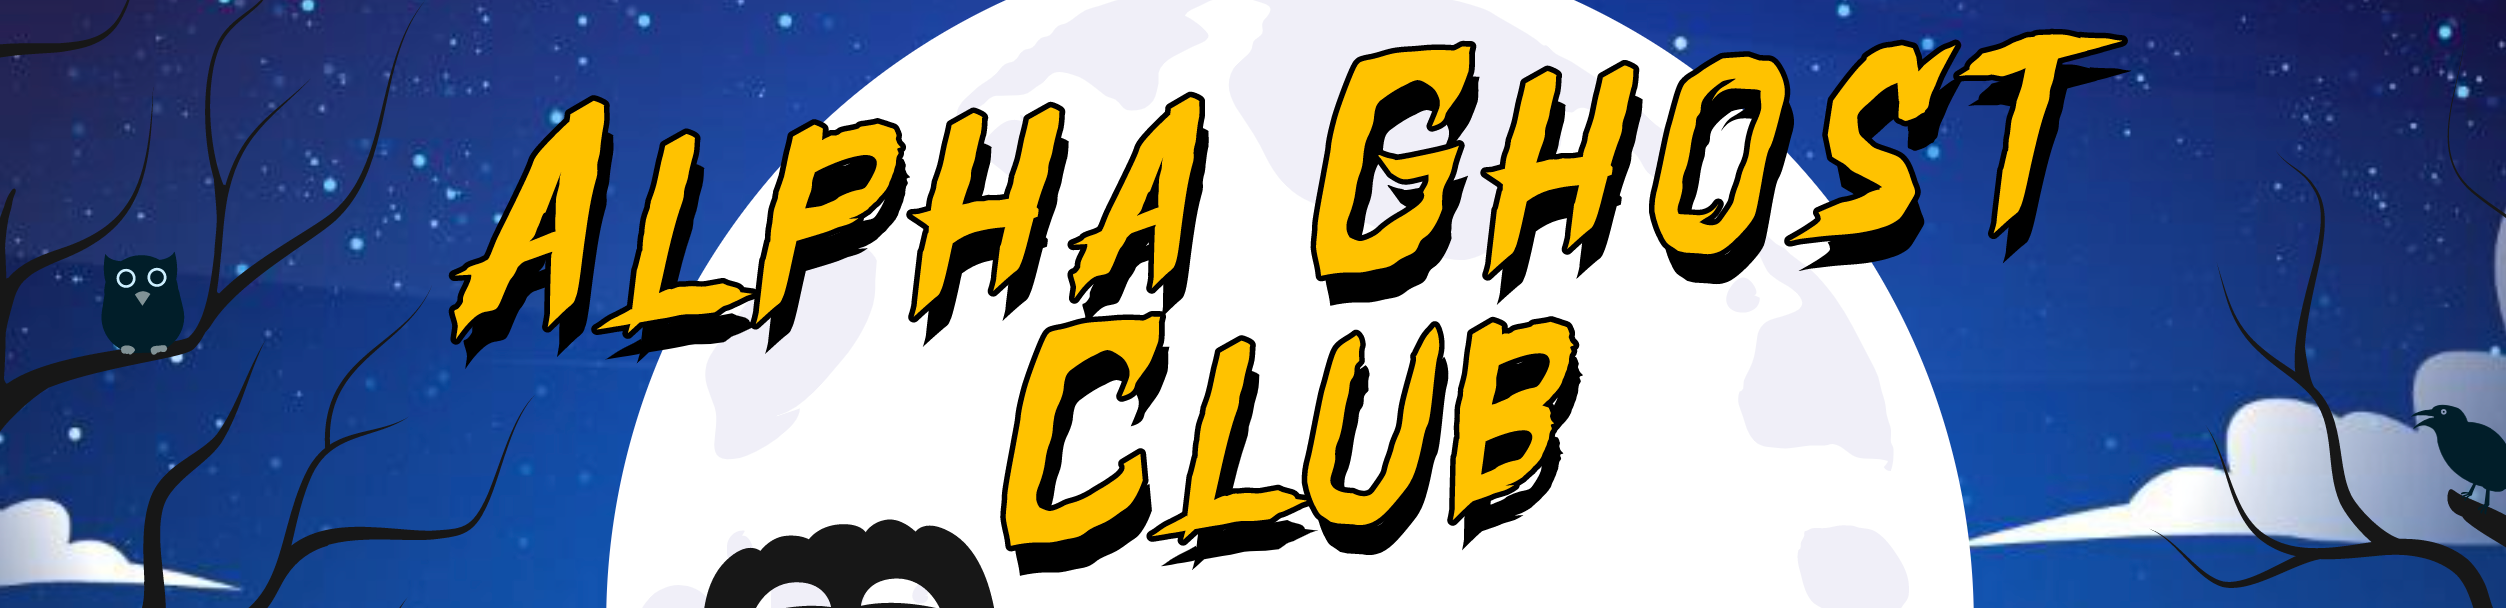 Alpha Ghost Club